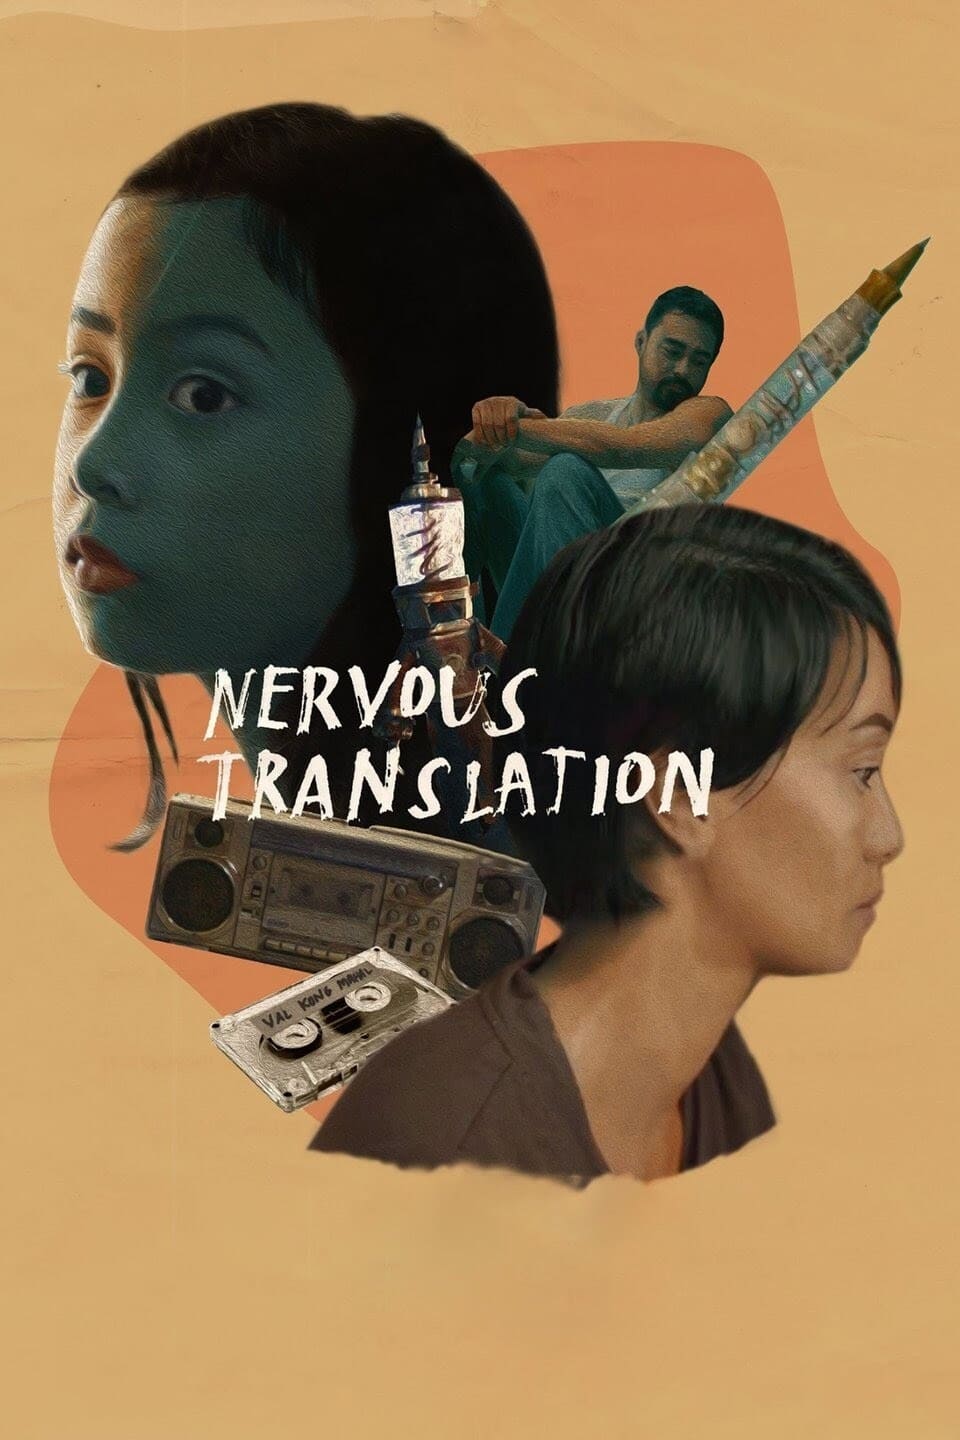 Nervous Translation (2019)